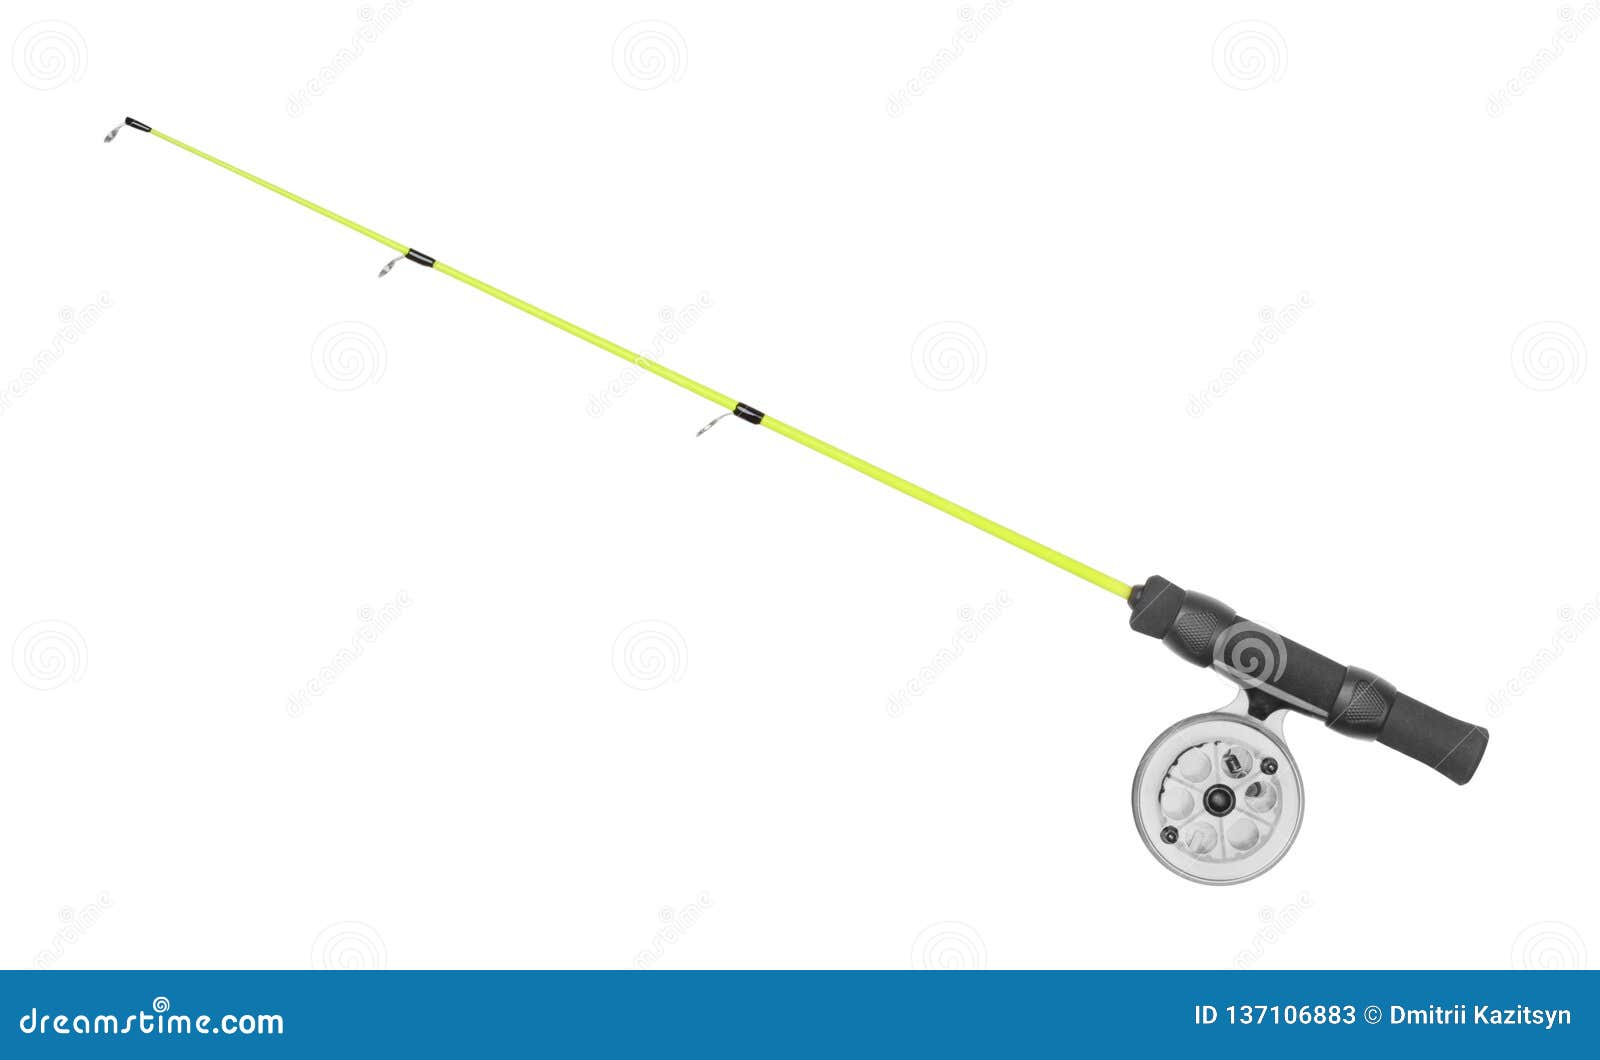 Fishing Rod Isolated on White Stock Image - Image of imitation